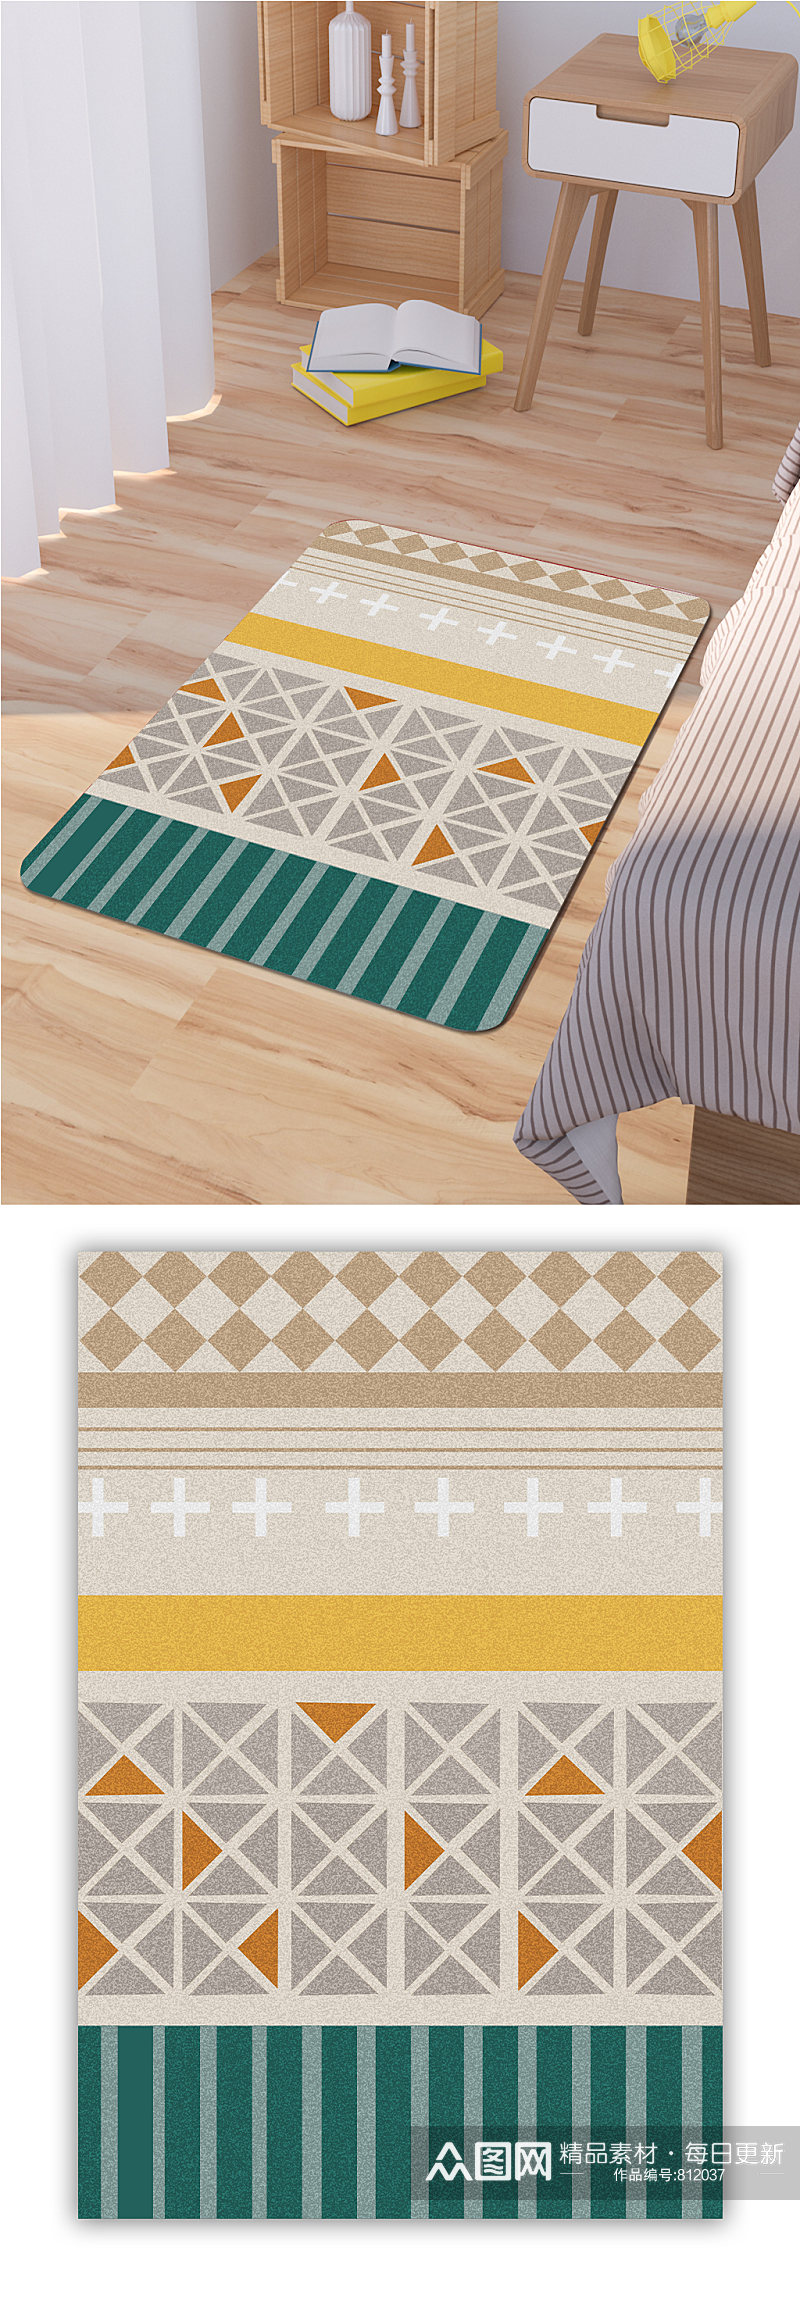 卧室地毯厨房地毯素材